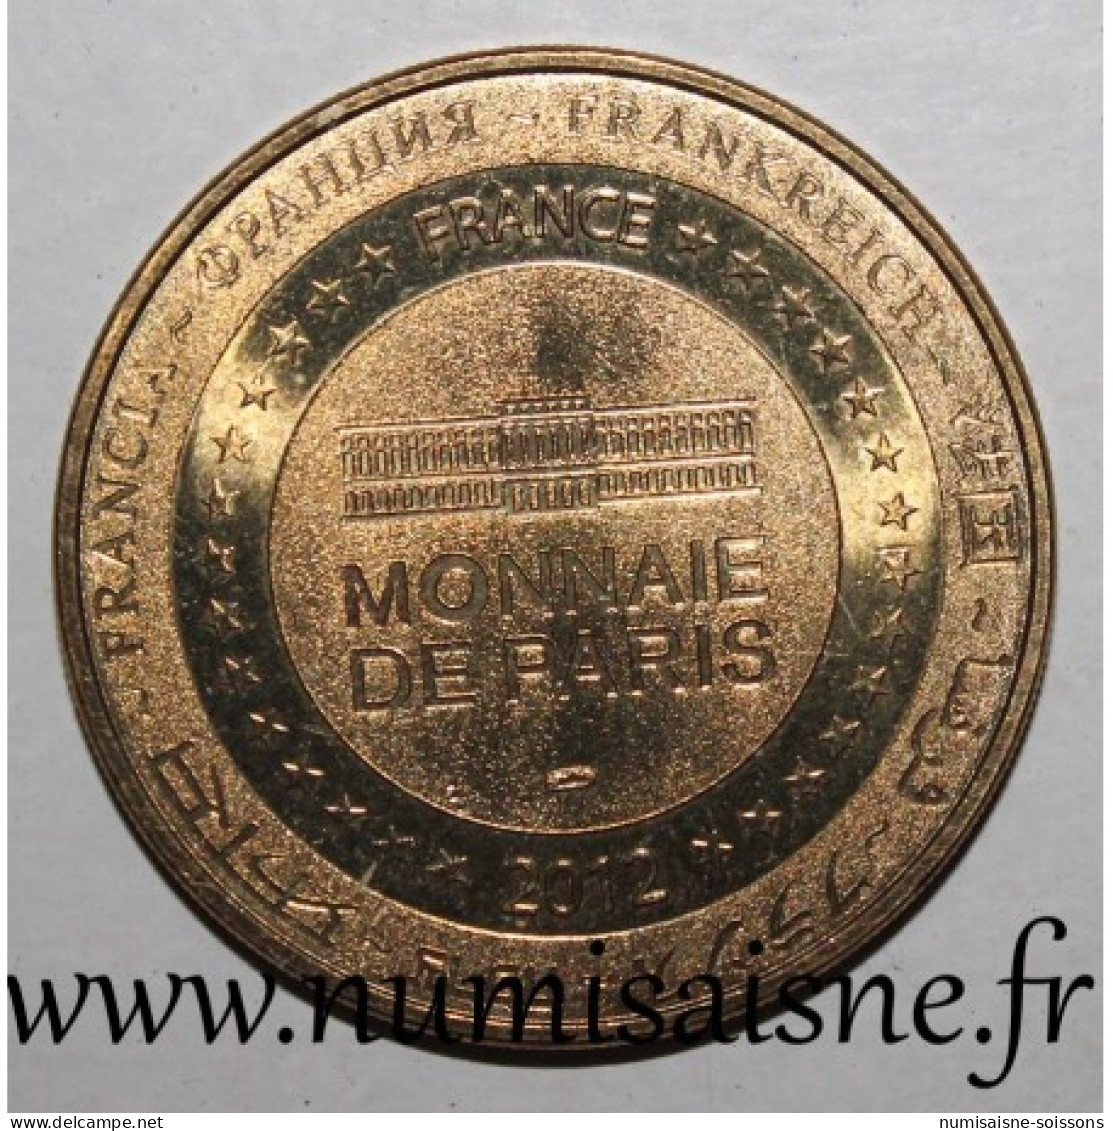 75 - PARIS - FÉDÉRATION FRANCAISE DU SPORT AUTOMOBILE - Monnaie De Paris - 2012 - 2012